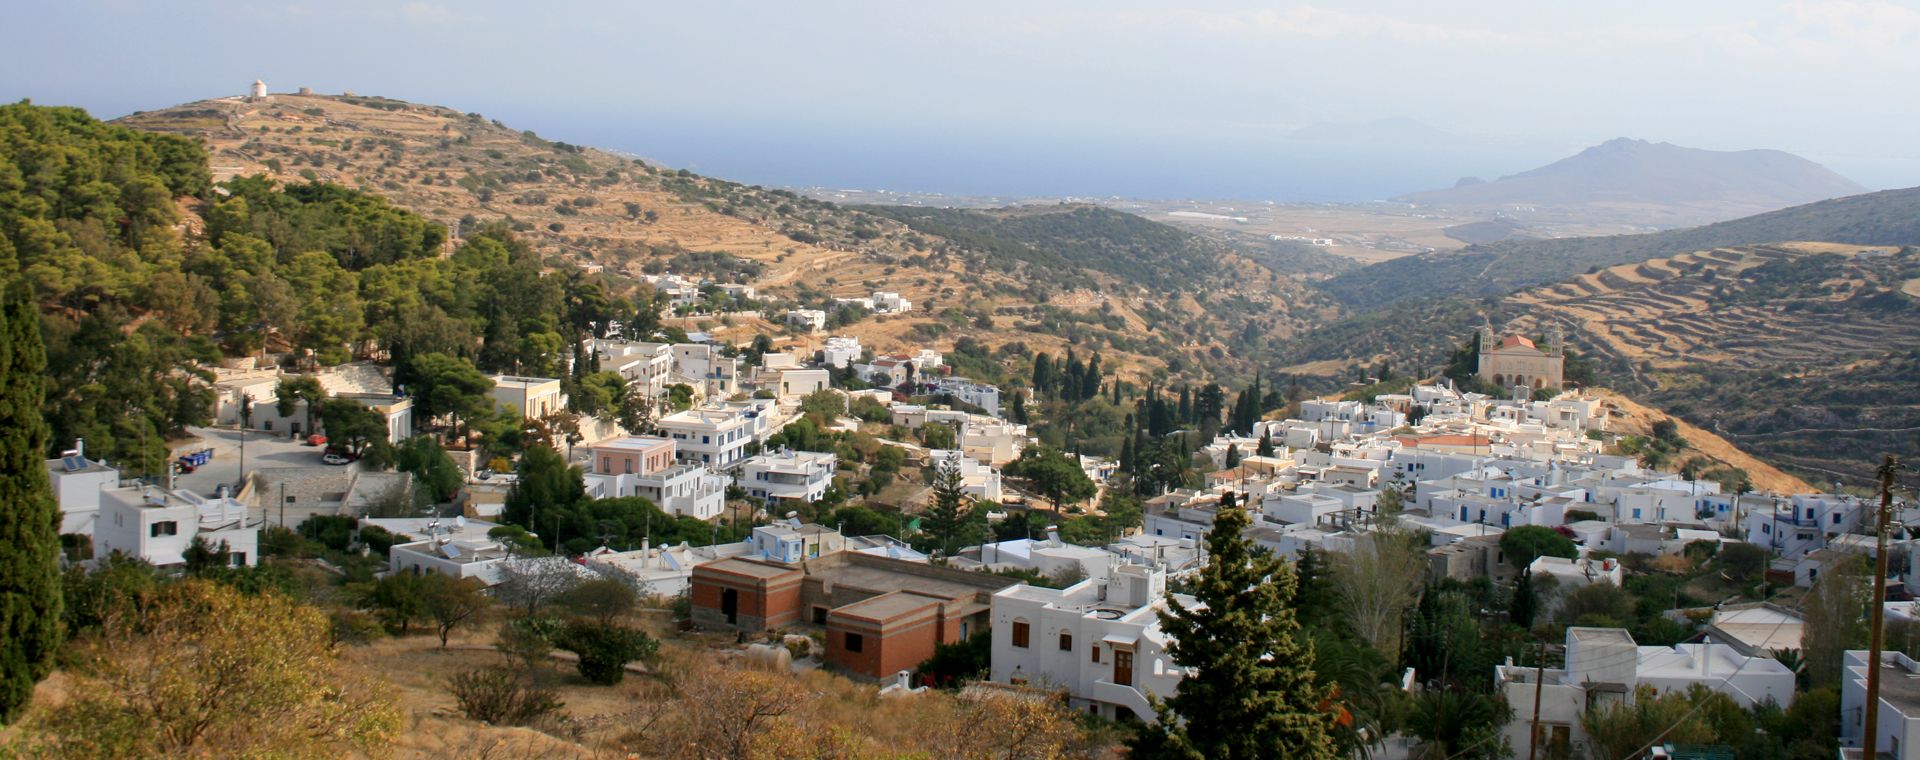 Village de Lefkes, sur l'île de Paros